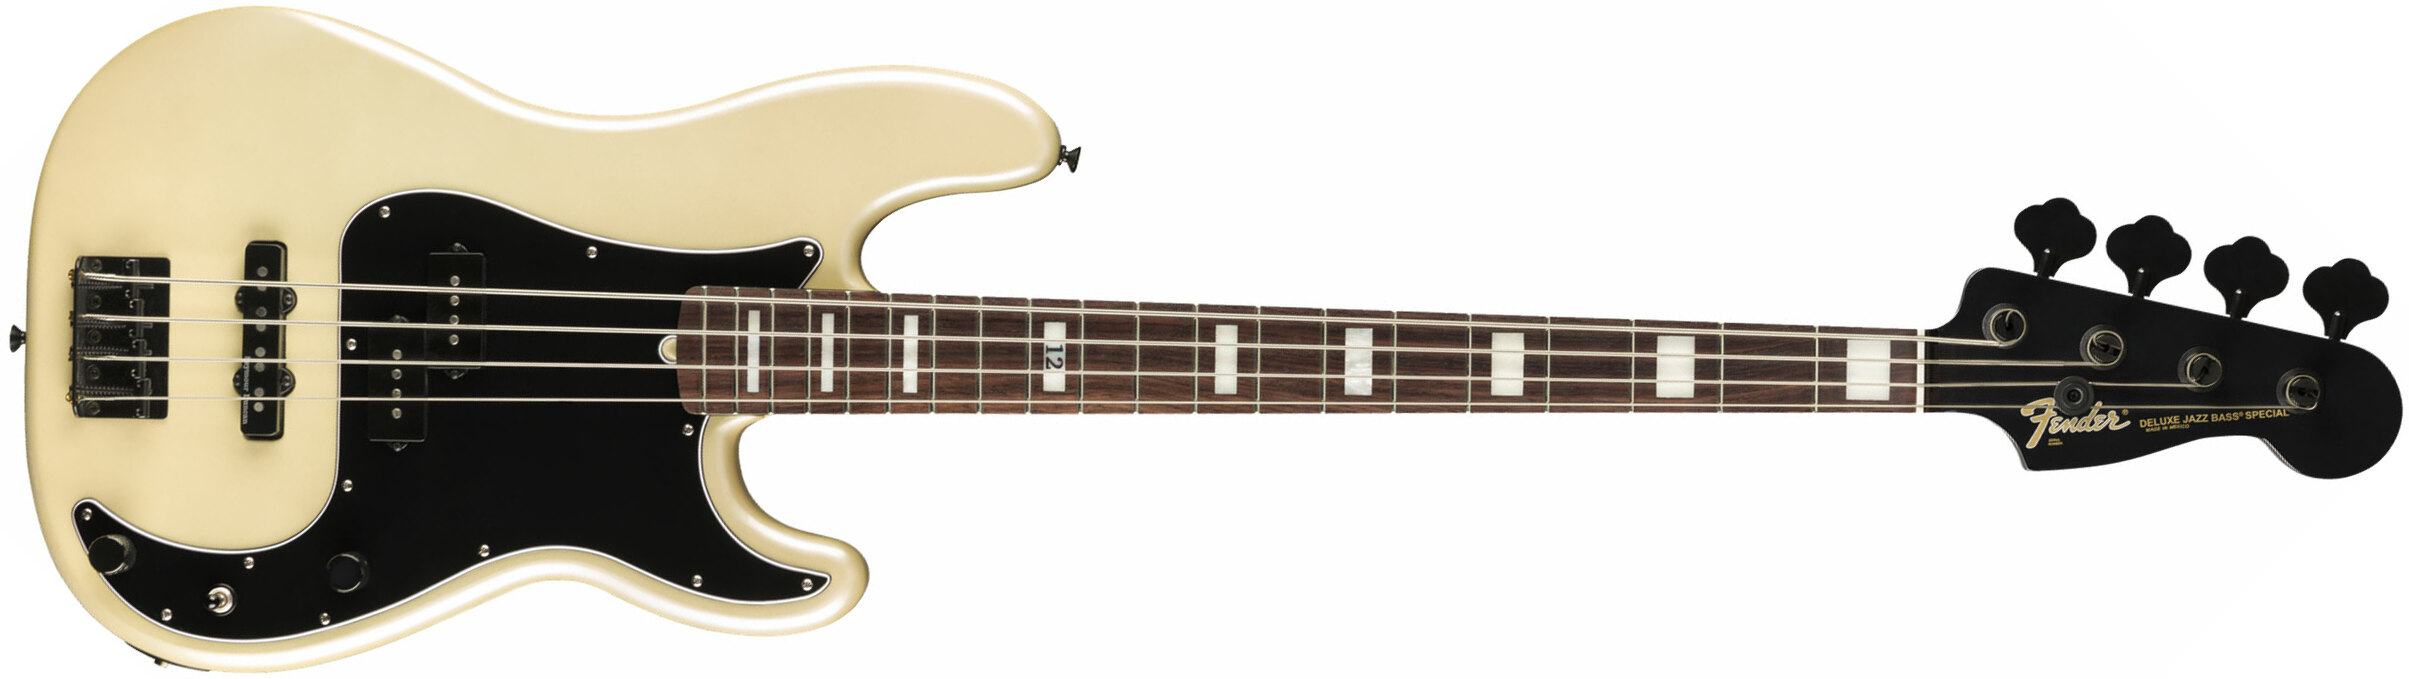 Fender Duff Mckagan Precision Bass Deluxe Signature Rw - White Pearl - Solidbody E-bass - Main picture